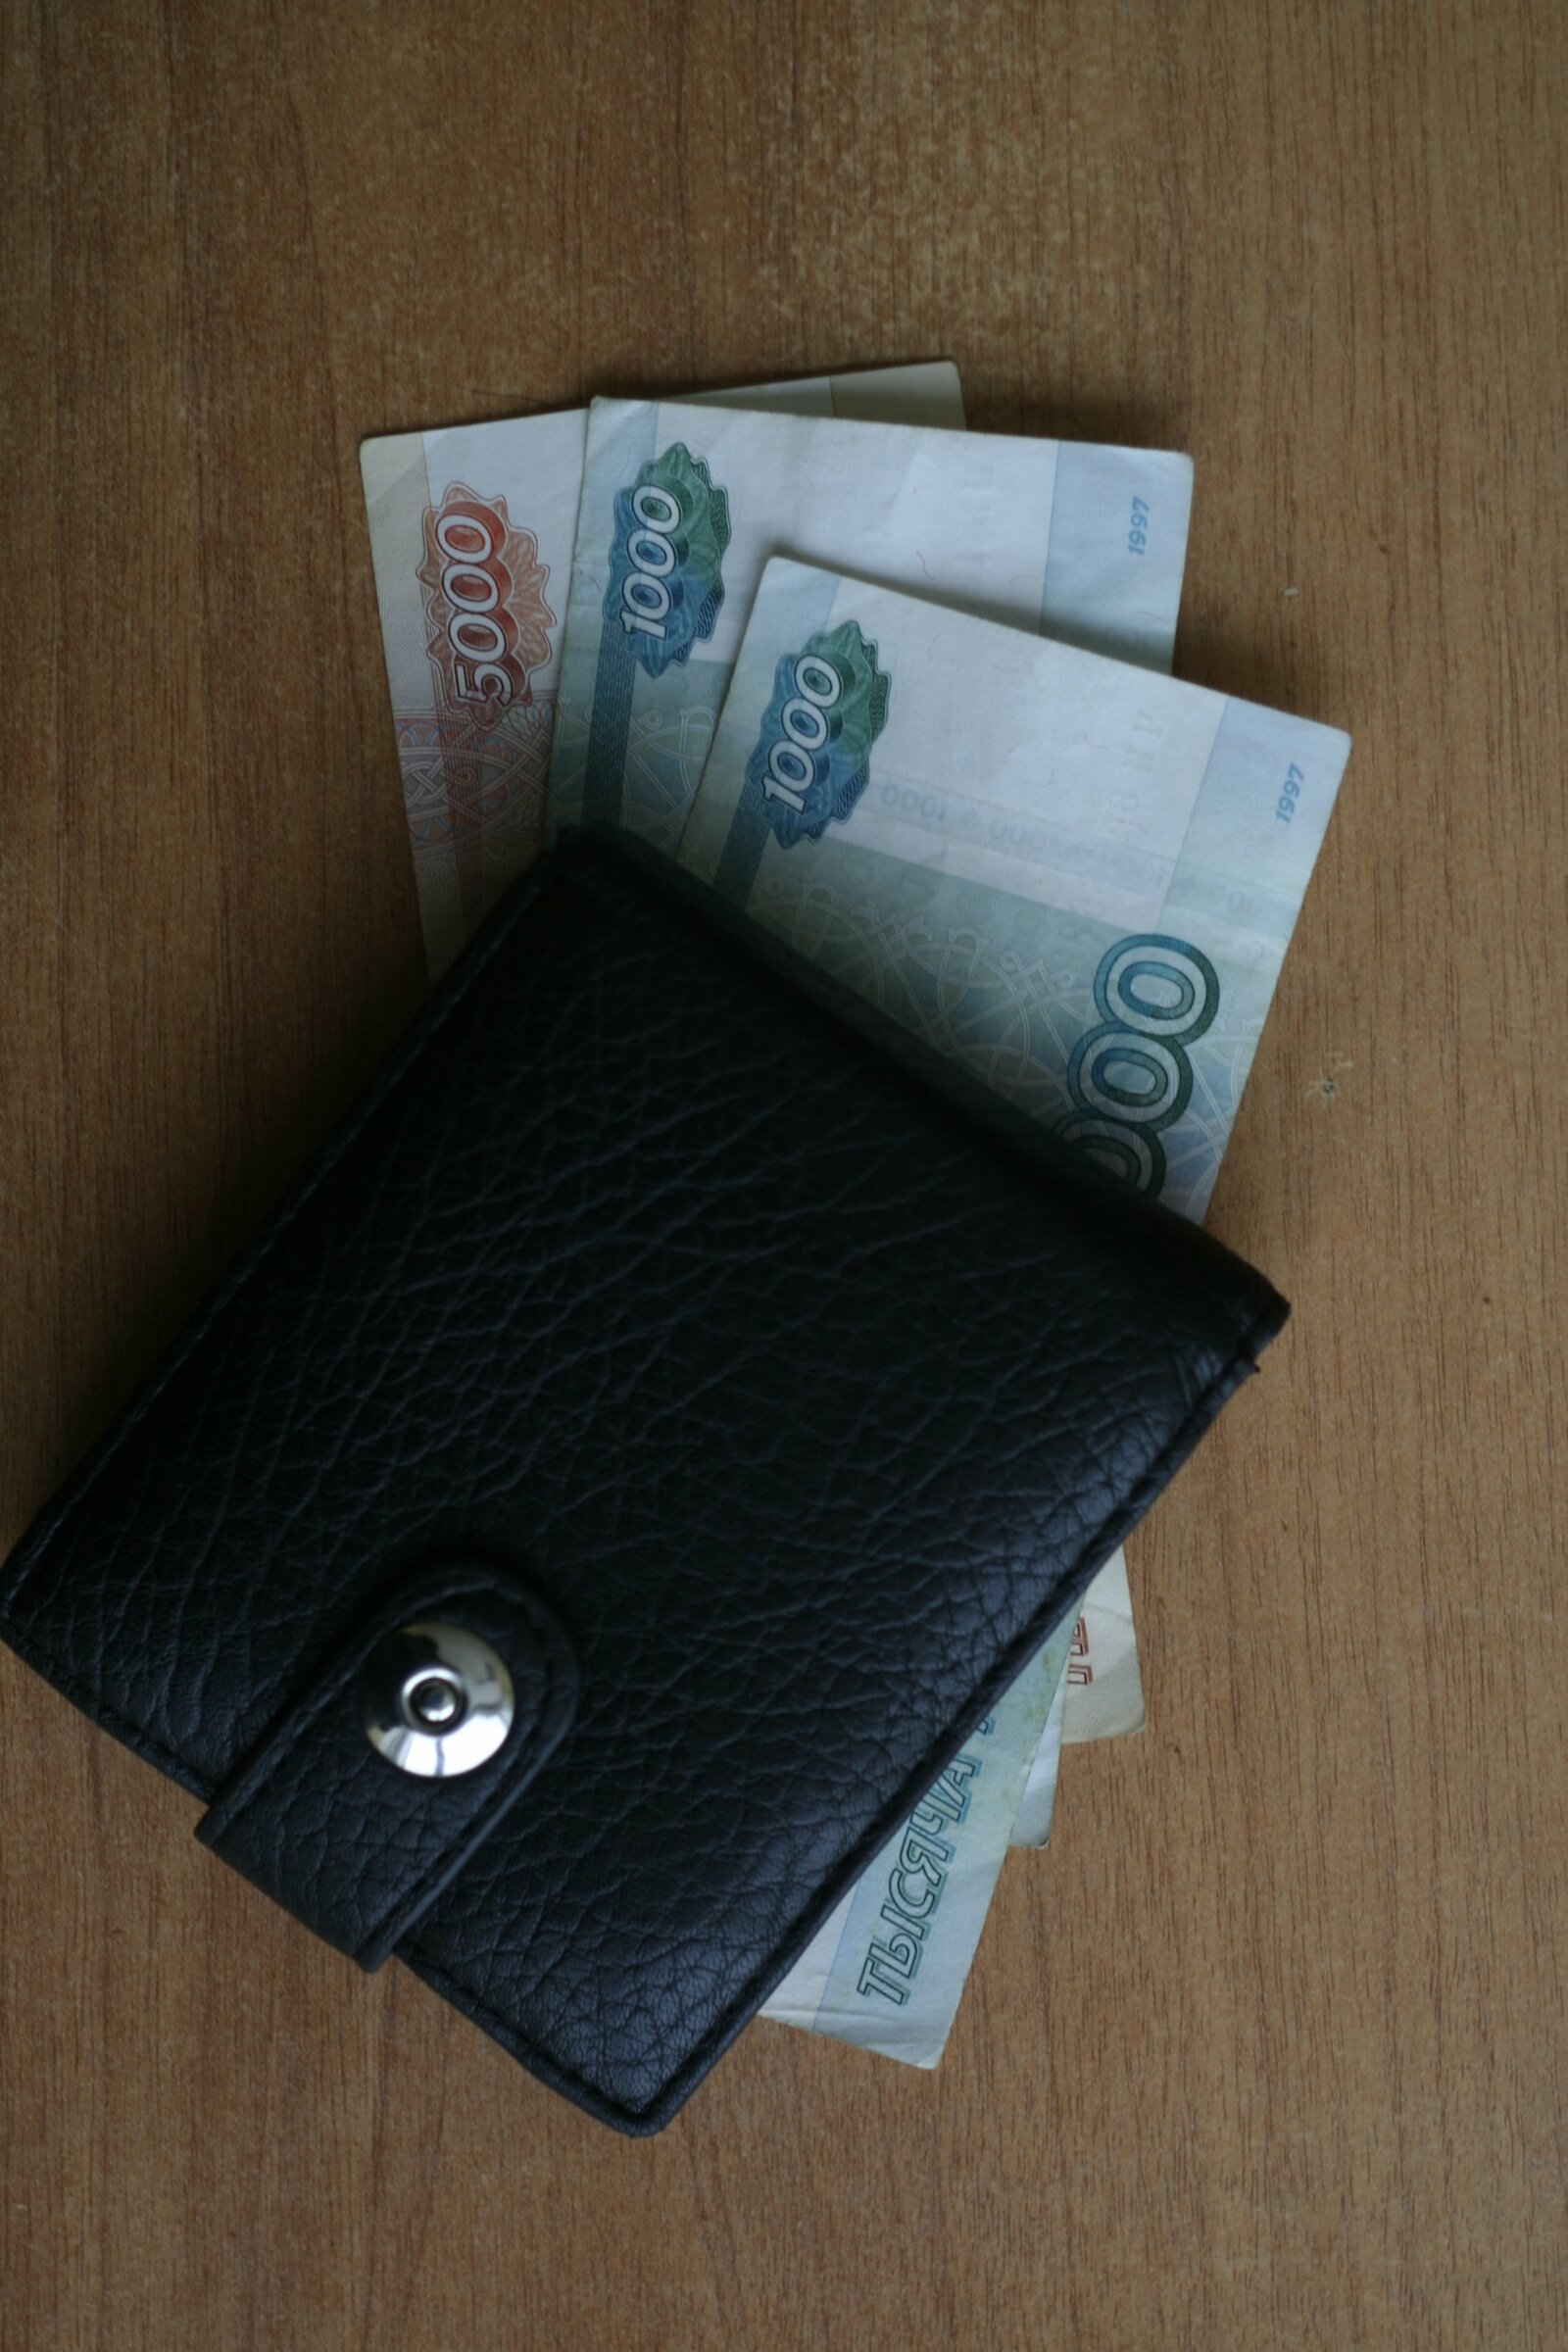 За сутки мошенники выманили у жителей одного города Башкирии 2,5 миллиона рублей